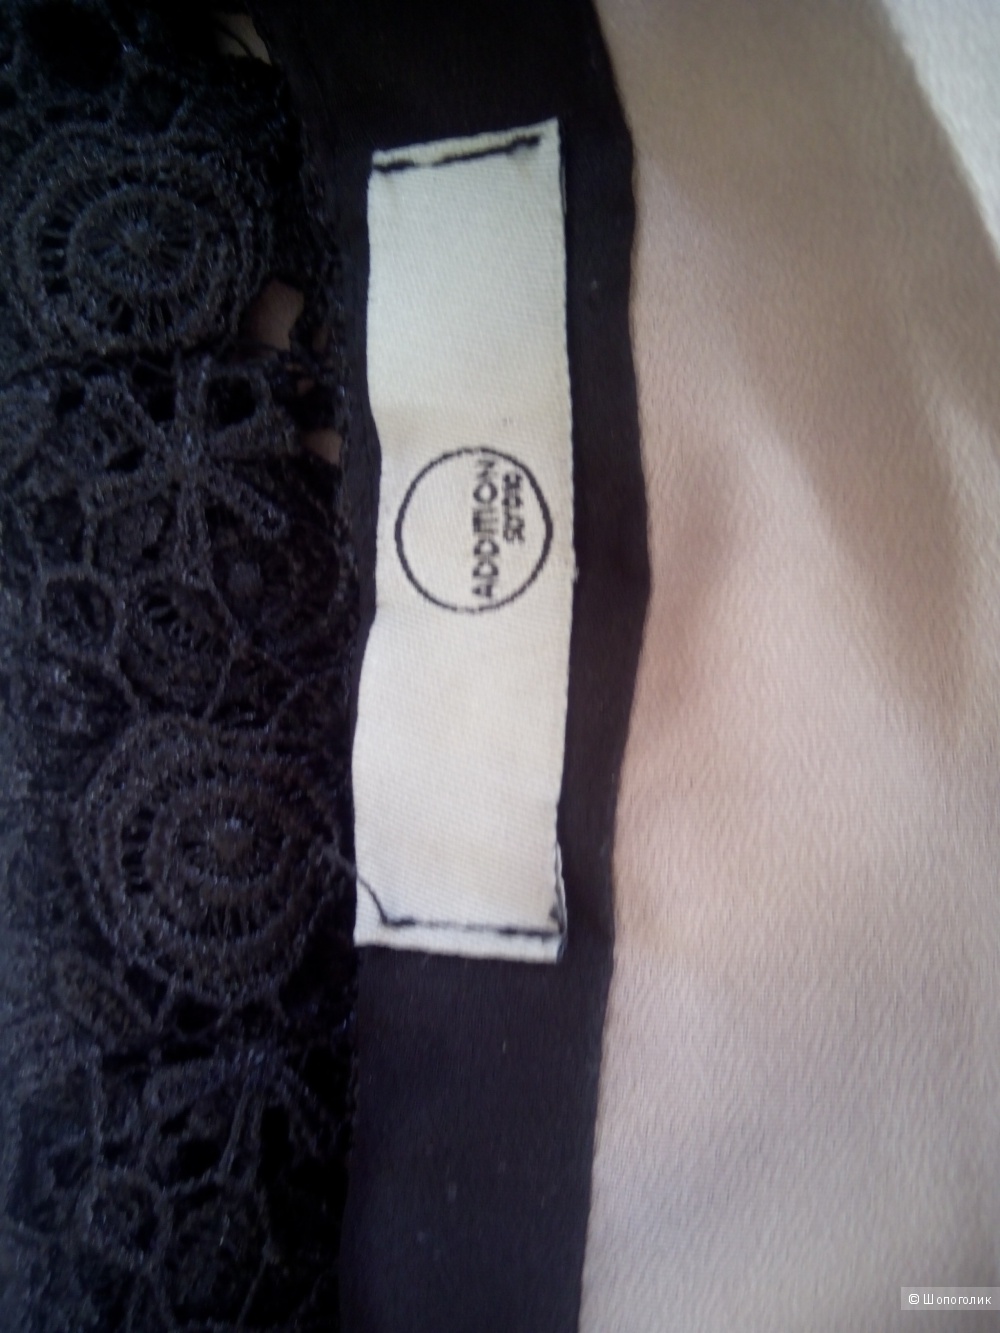 Новая кружевная юбка из Германии Sly 010 Addition размер 44-48